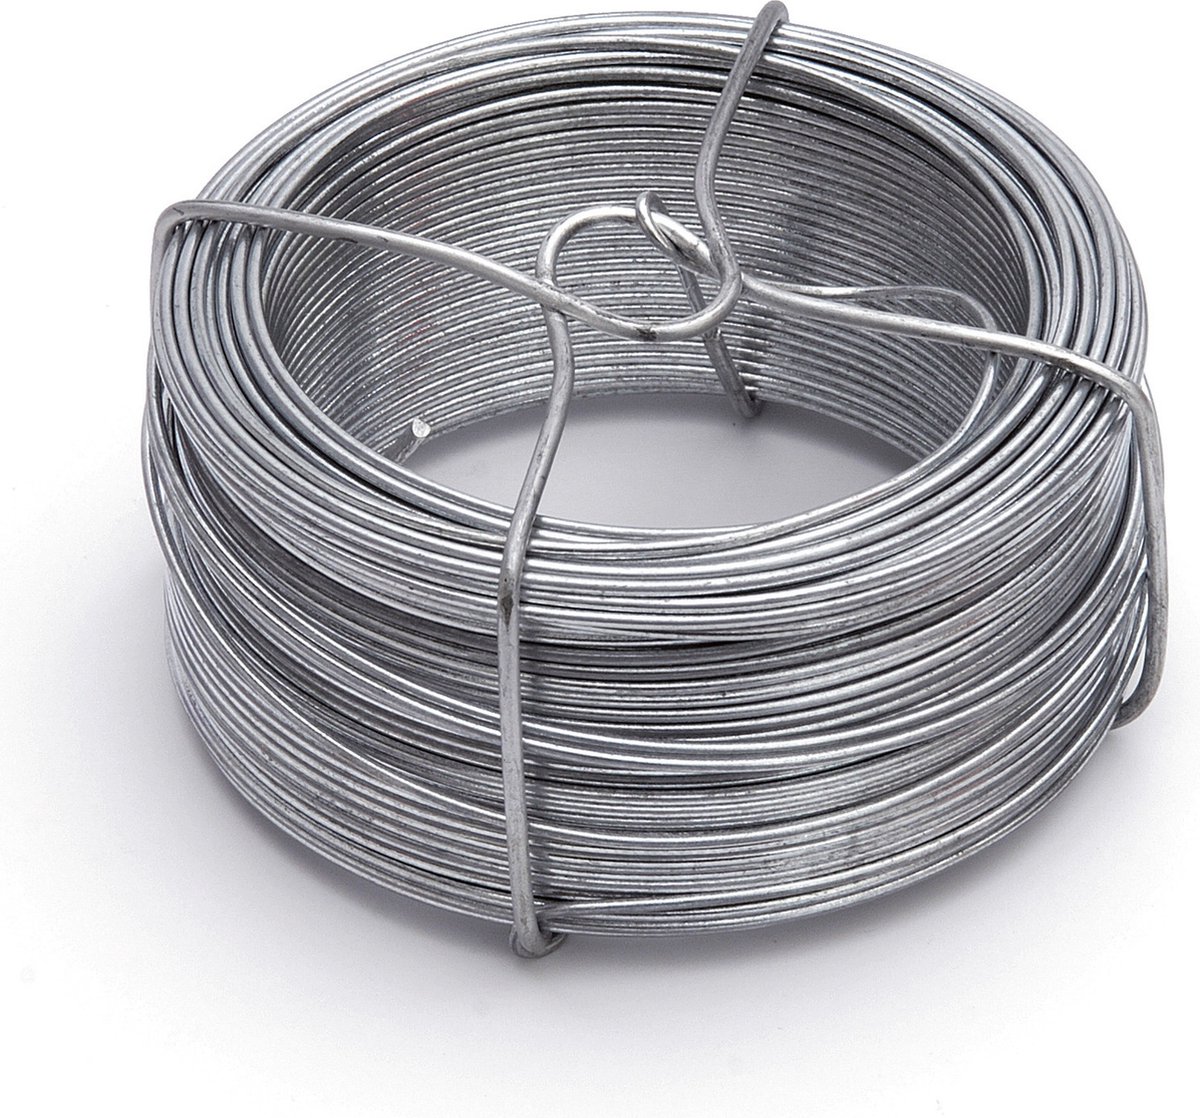 2 rouleaux de fil de fer / fils de reliure en acier galvanisé 1,8 mm x 50 m  sur un